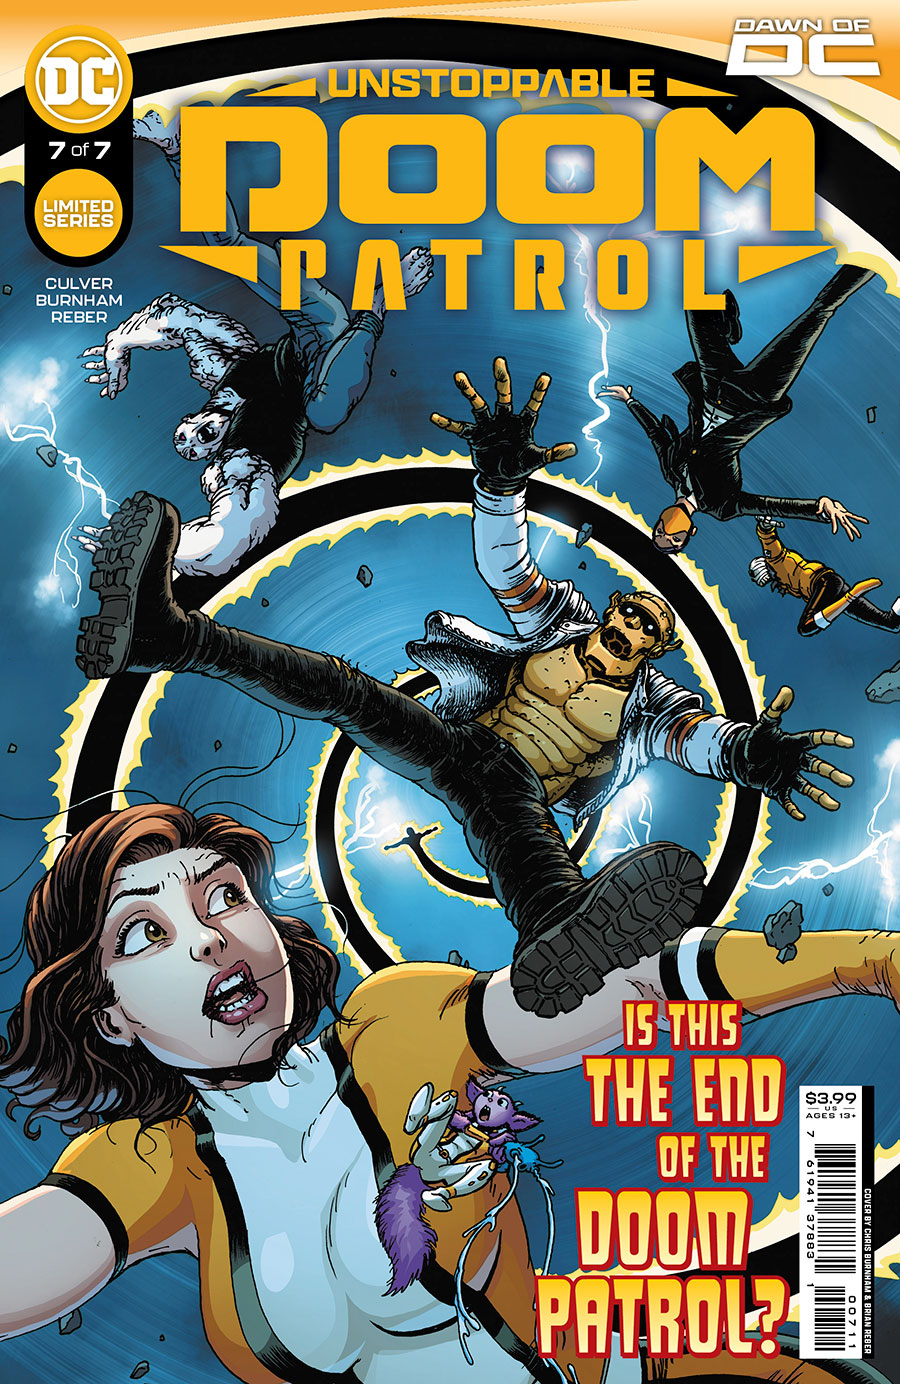 Unstoppable Doom Patrol #7 Cover A Regular Chris Burnham Cover